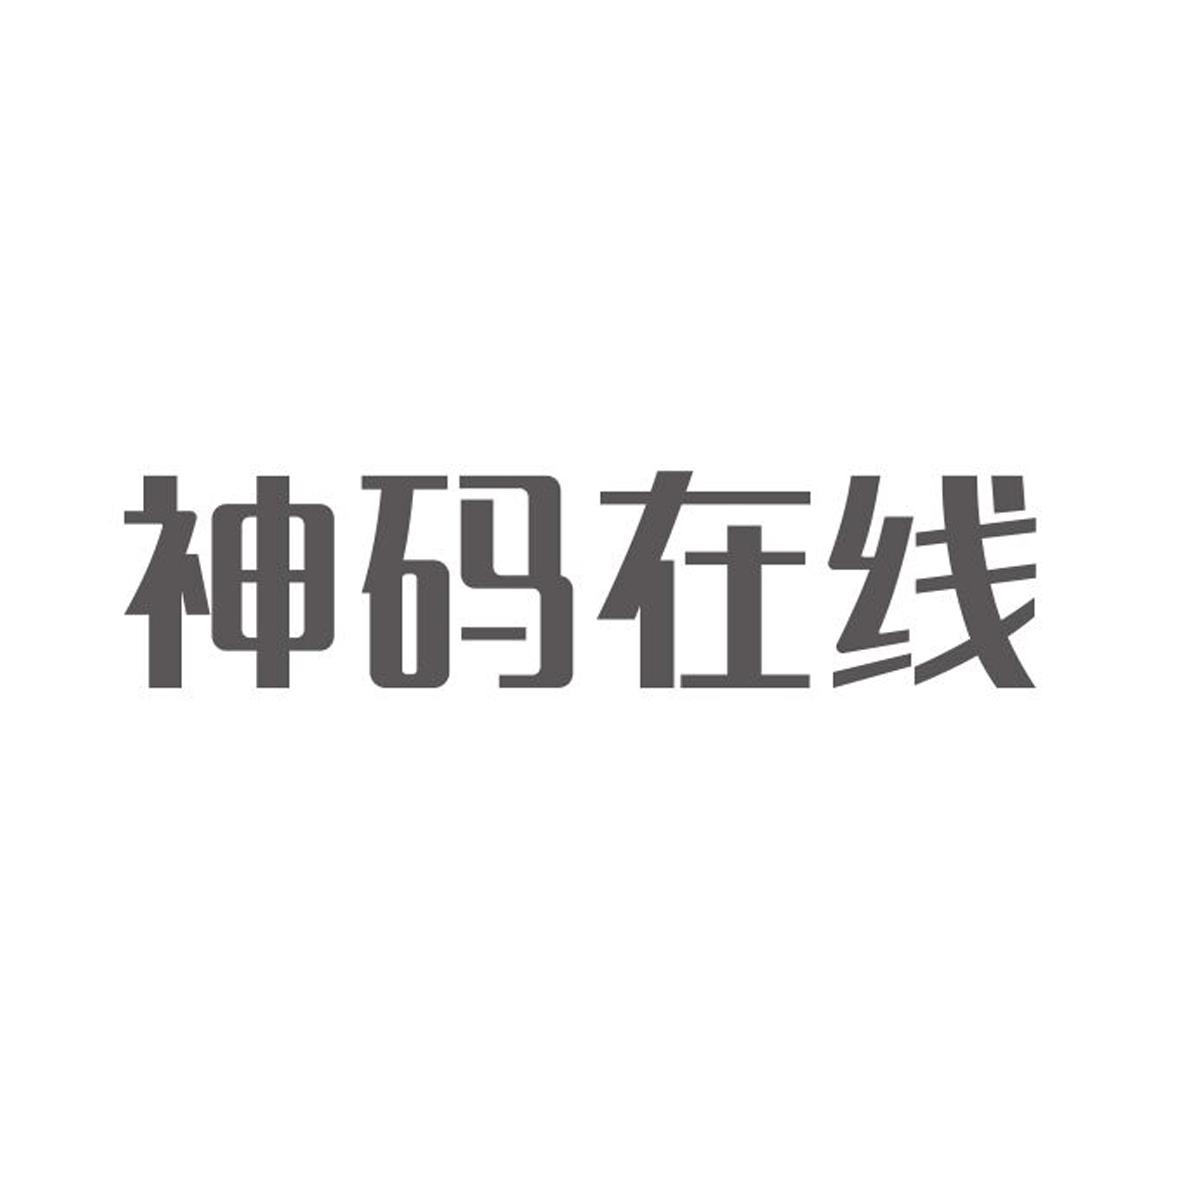 神碼線上-834748-北京神碼線上教育科技股份有限公司